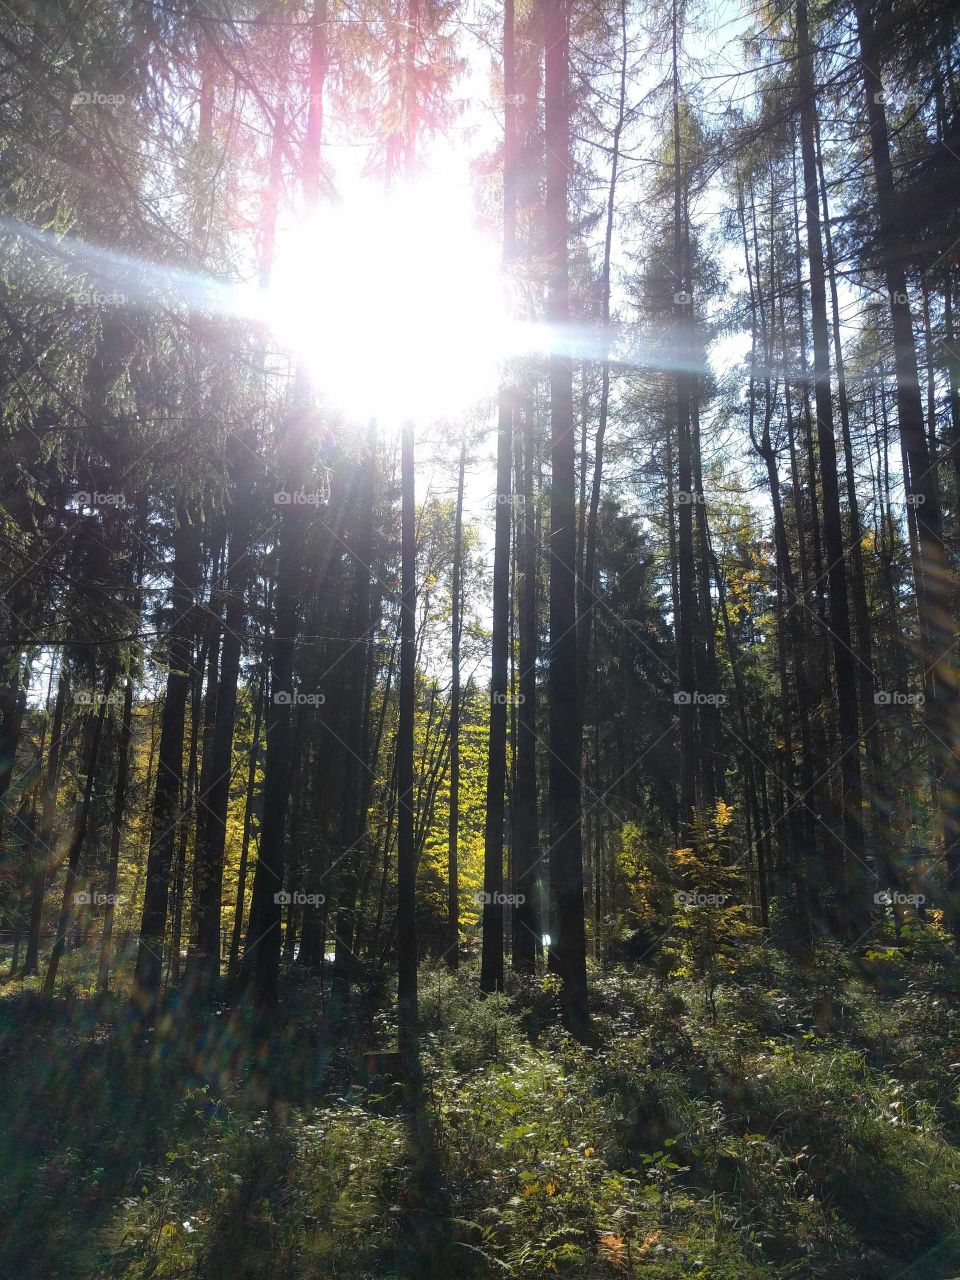 Walking in the woods in the Czech republic